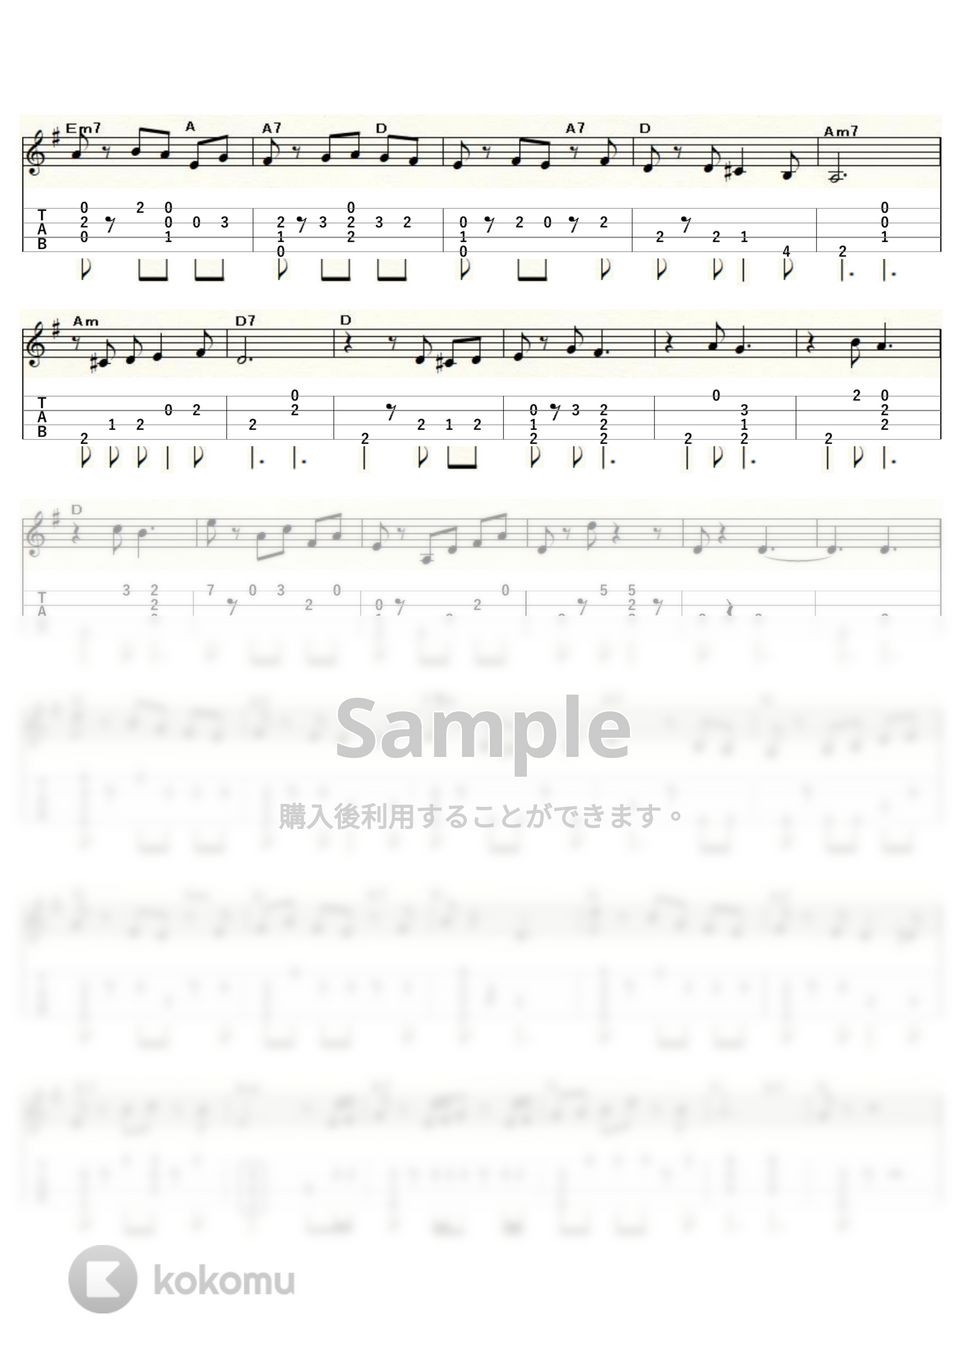 アーサー・プライヤー - 口笛吹きと犬 (ｳｸﾚﾚｿﾛ / Low-G / 中級) by ukulelepapa